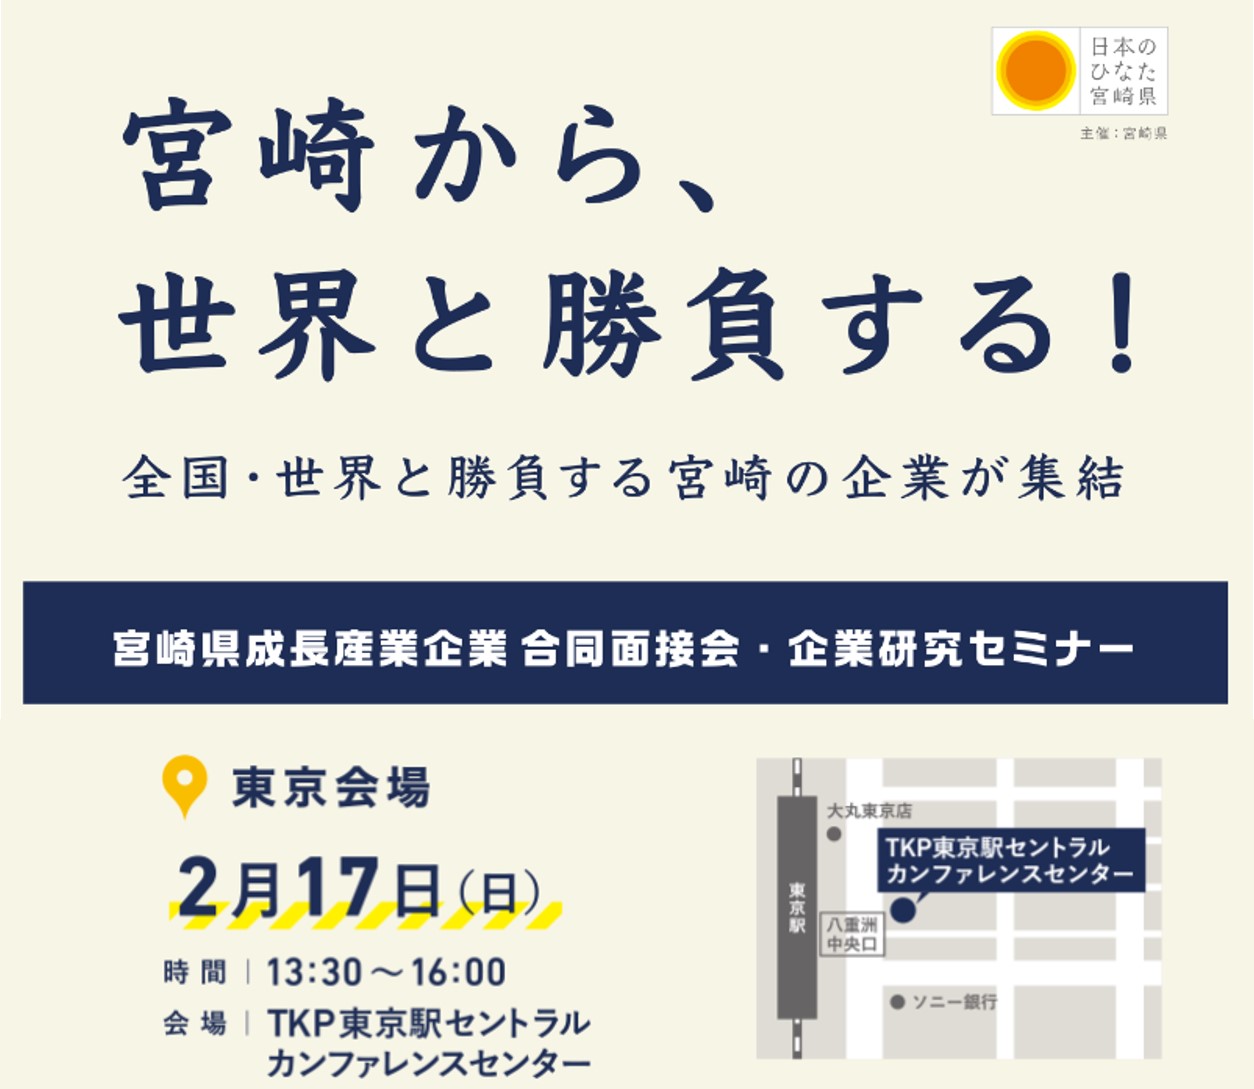 宮崎県成長産業企業 合同面接会・企業研究セミナー | 移住関連イベント情報